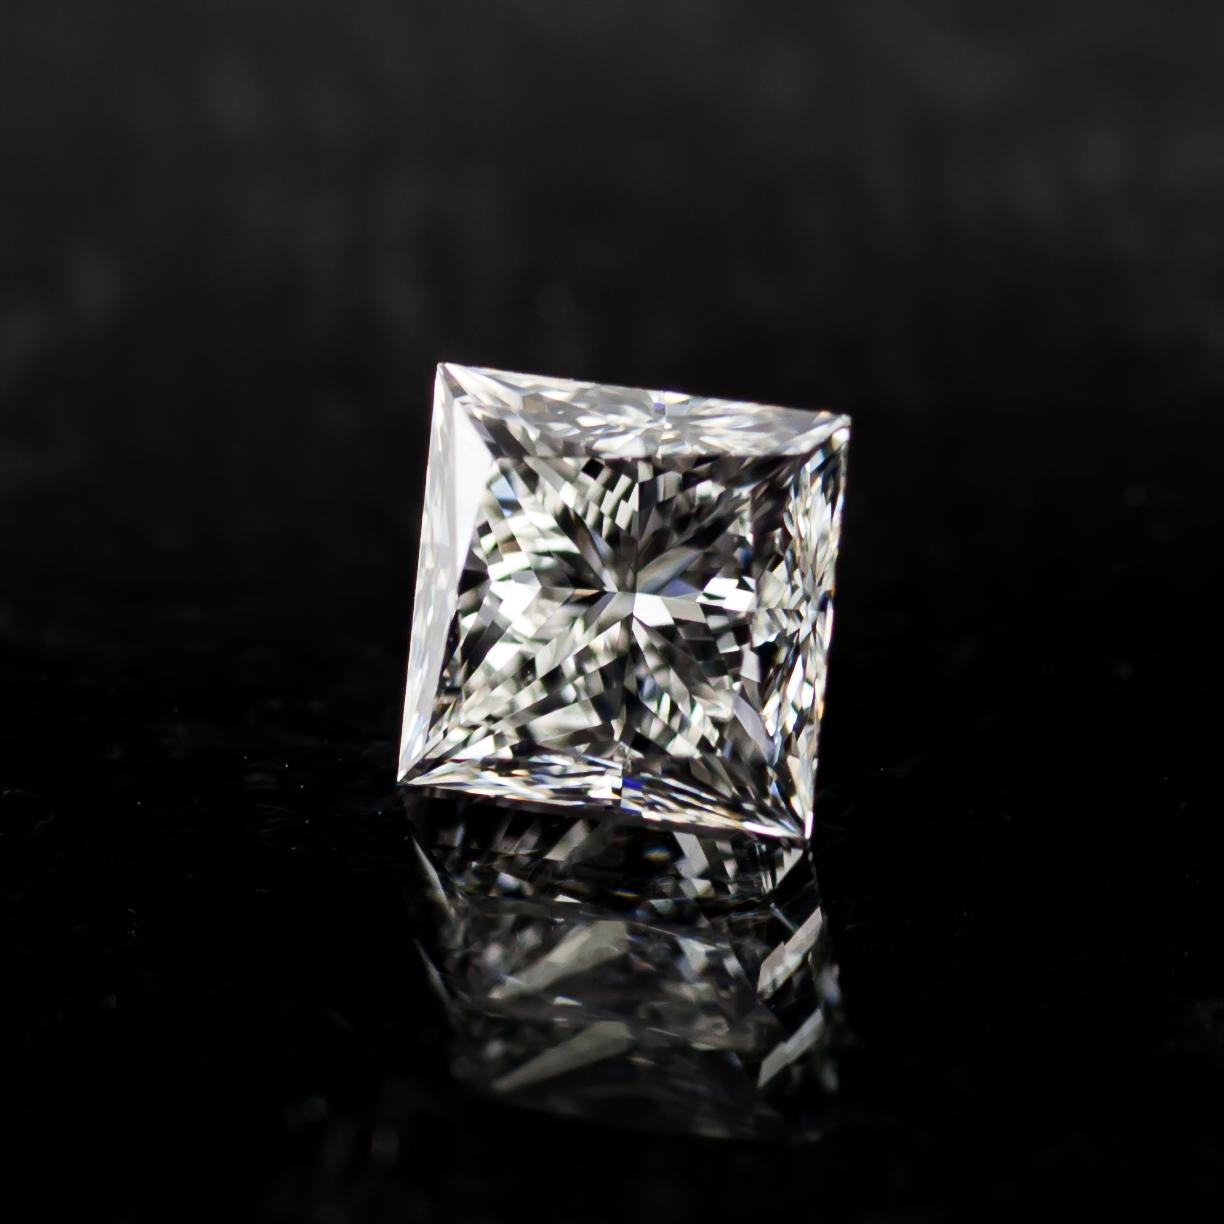 1.03 Carat Loose I / VS1 Princess Cut Diamond certifié GIA

Informations générales sur le diamant
Taille du diamant : Brilliante modifiée carrée
Dimensions : 5.35  x  5.34  -  4.09 mm

Résultats de la classification des diamants
Poids en carats :